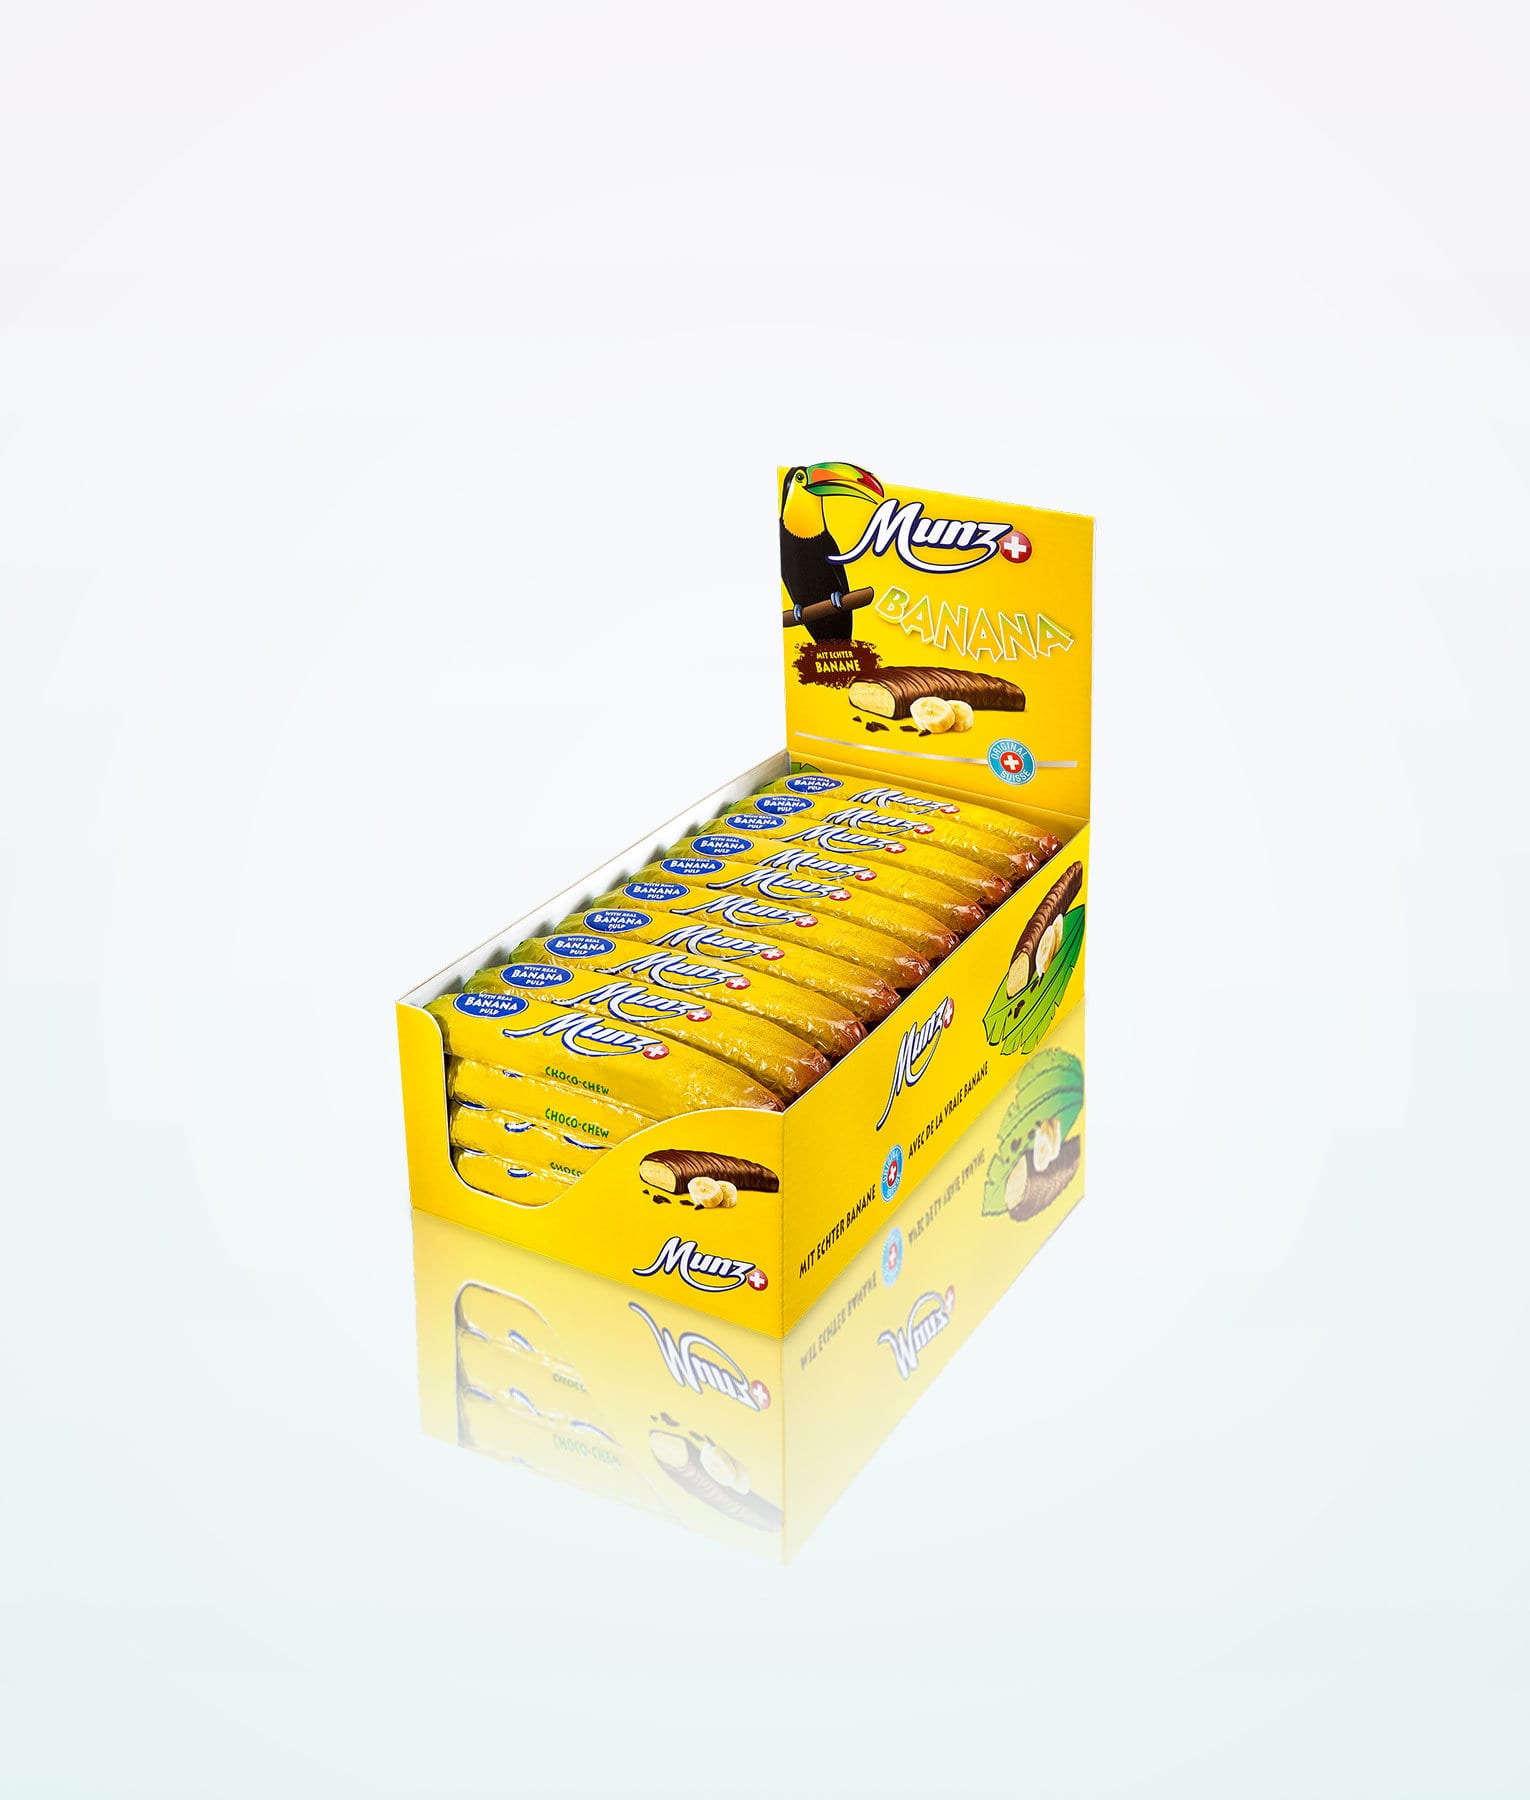 munz-chocolate-bananas-box-760g